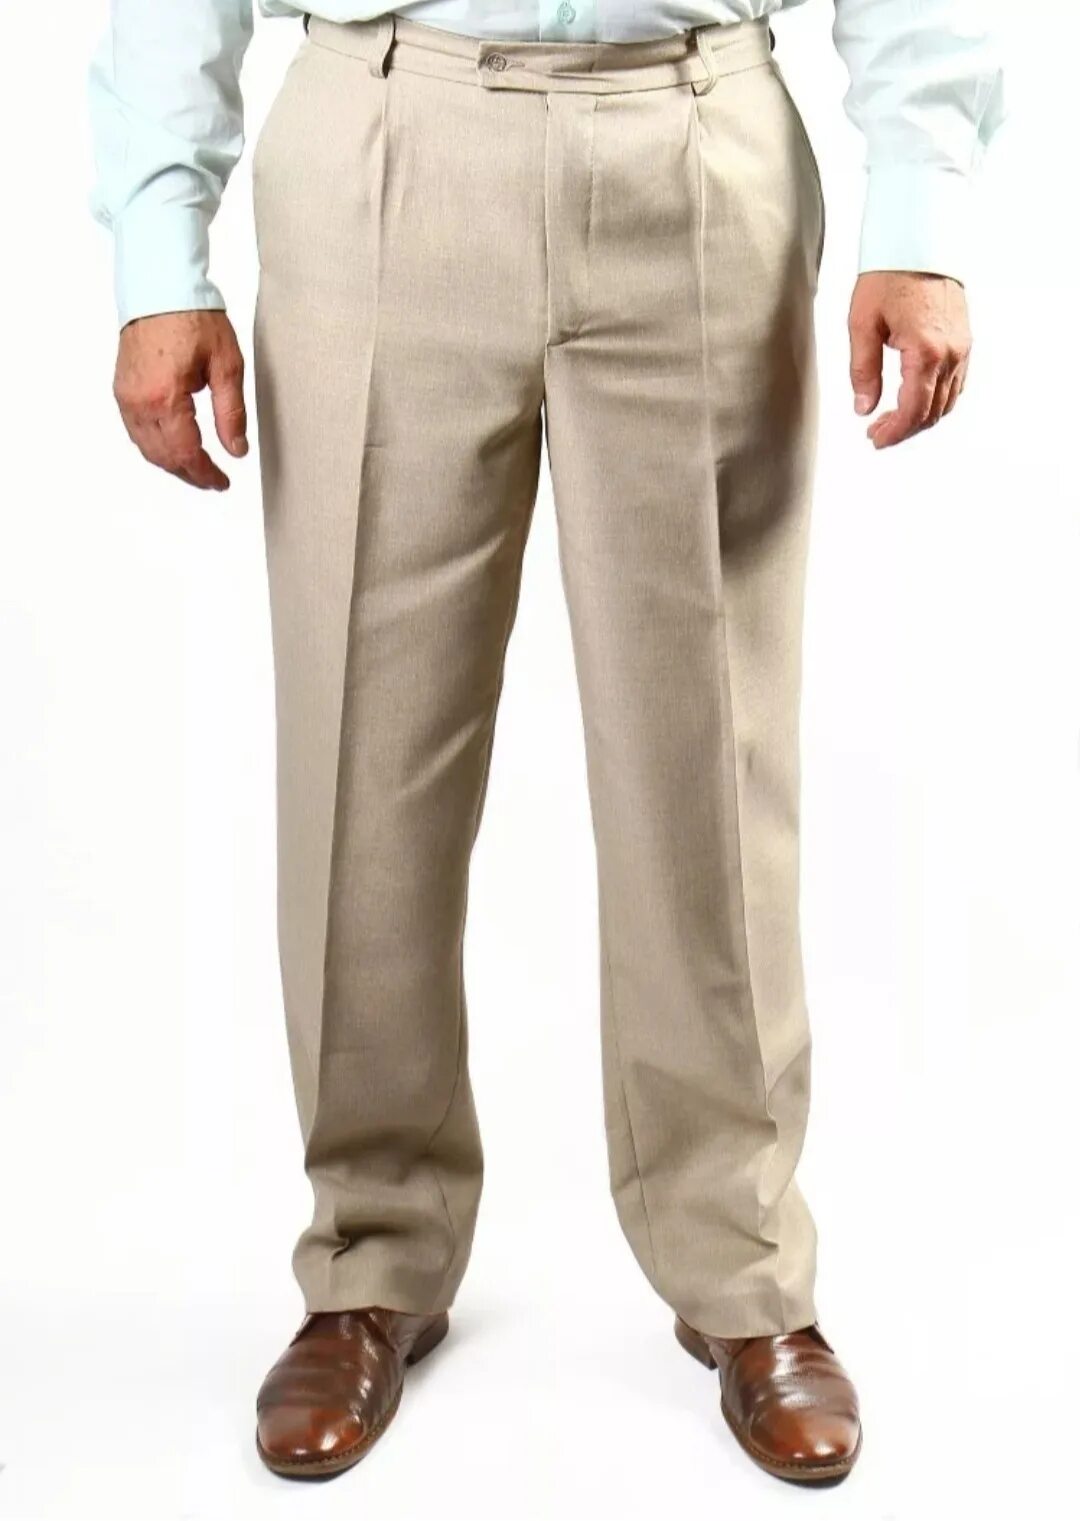 Брюки светлые купить. Benetton мужские брюки Cotton Linen. Брюки мужские классические. Летние классические брюки для мужчин. Мужчина в классических брюках.